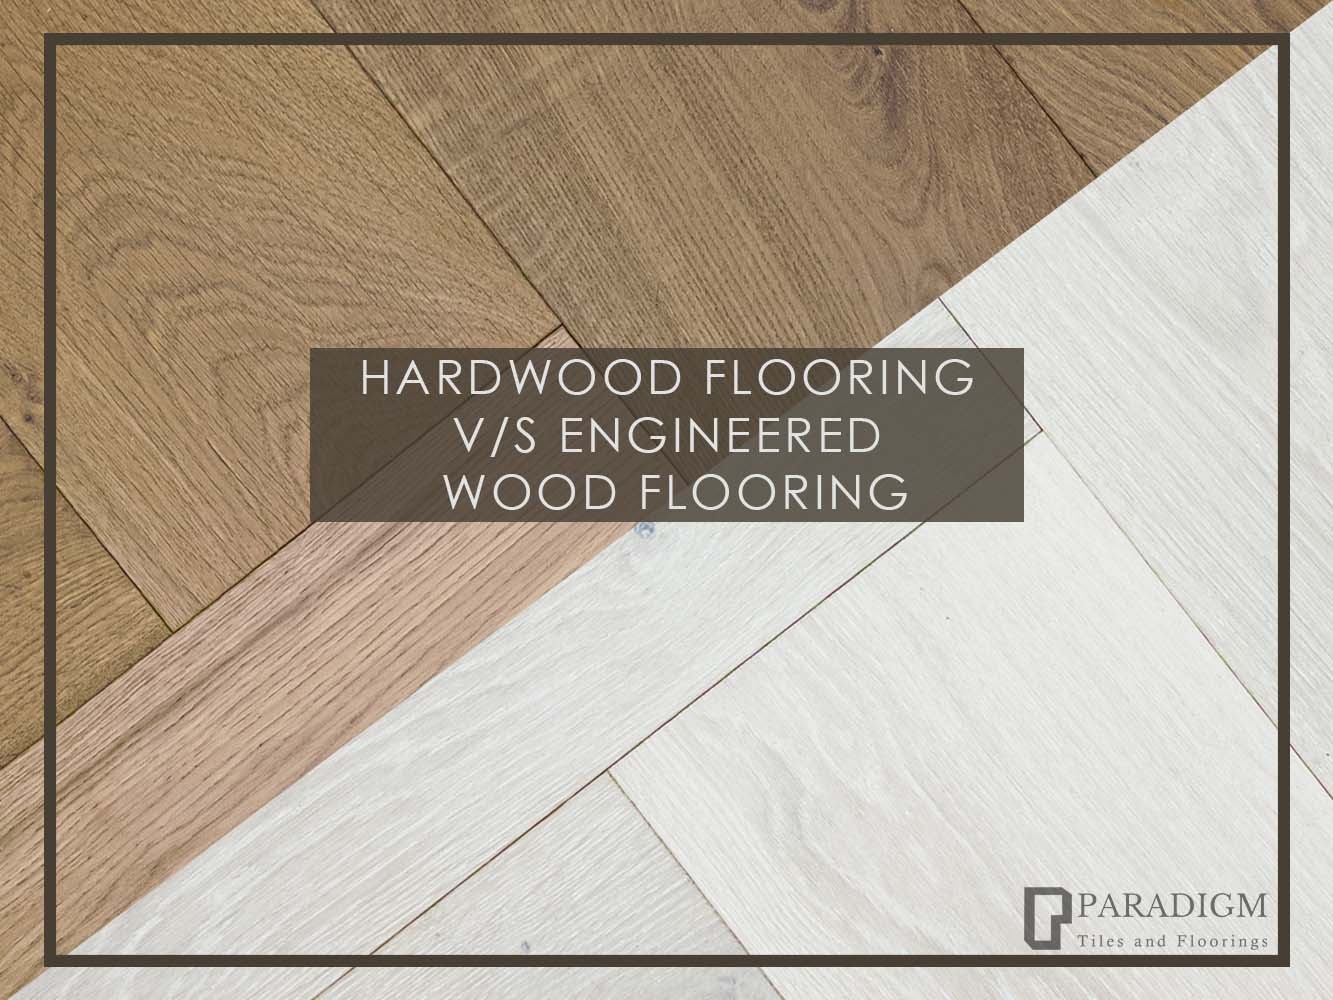 Hardwood flooring v/s Engineered wood flooring